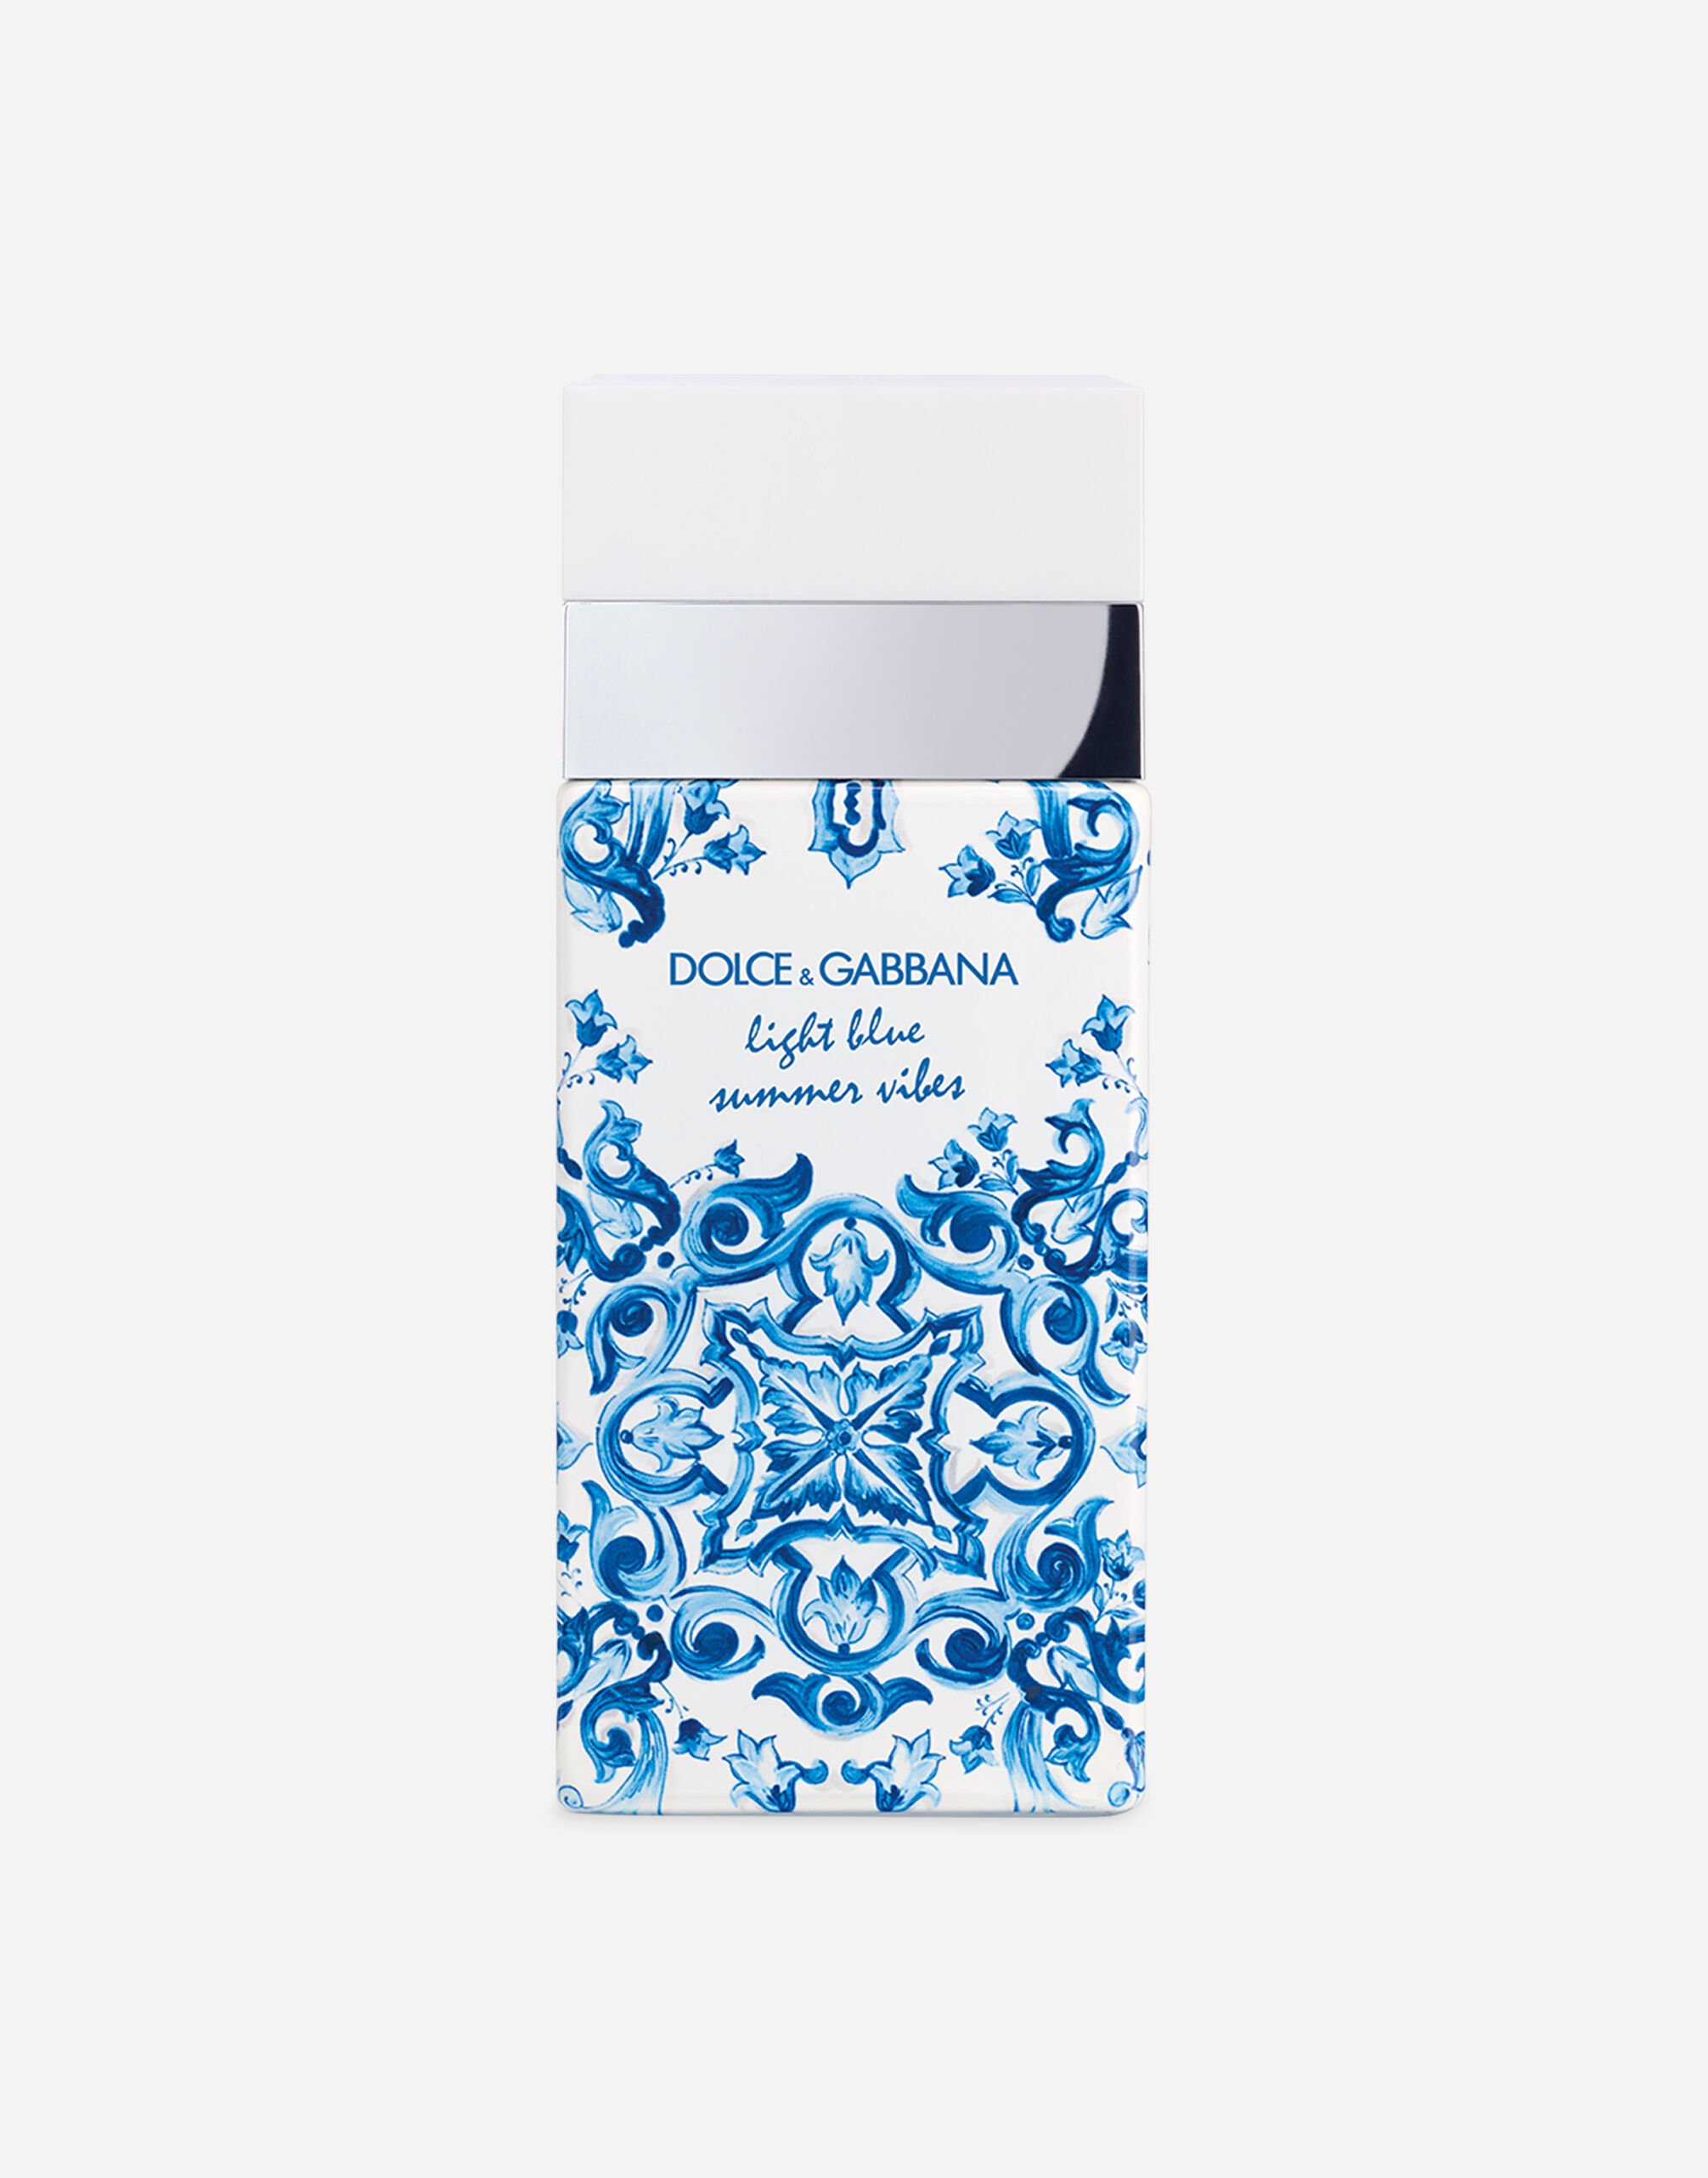 Dolce & Gabbana Light Blue Summer Vibes Eau de Toilette - VT007KVT000